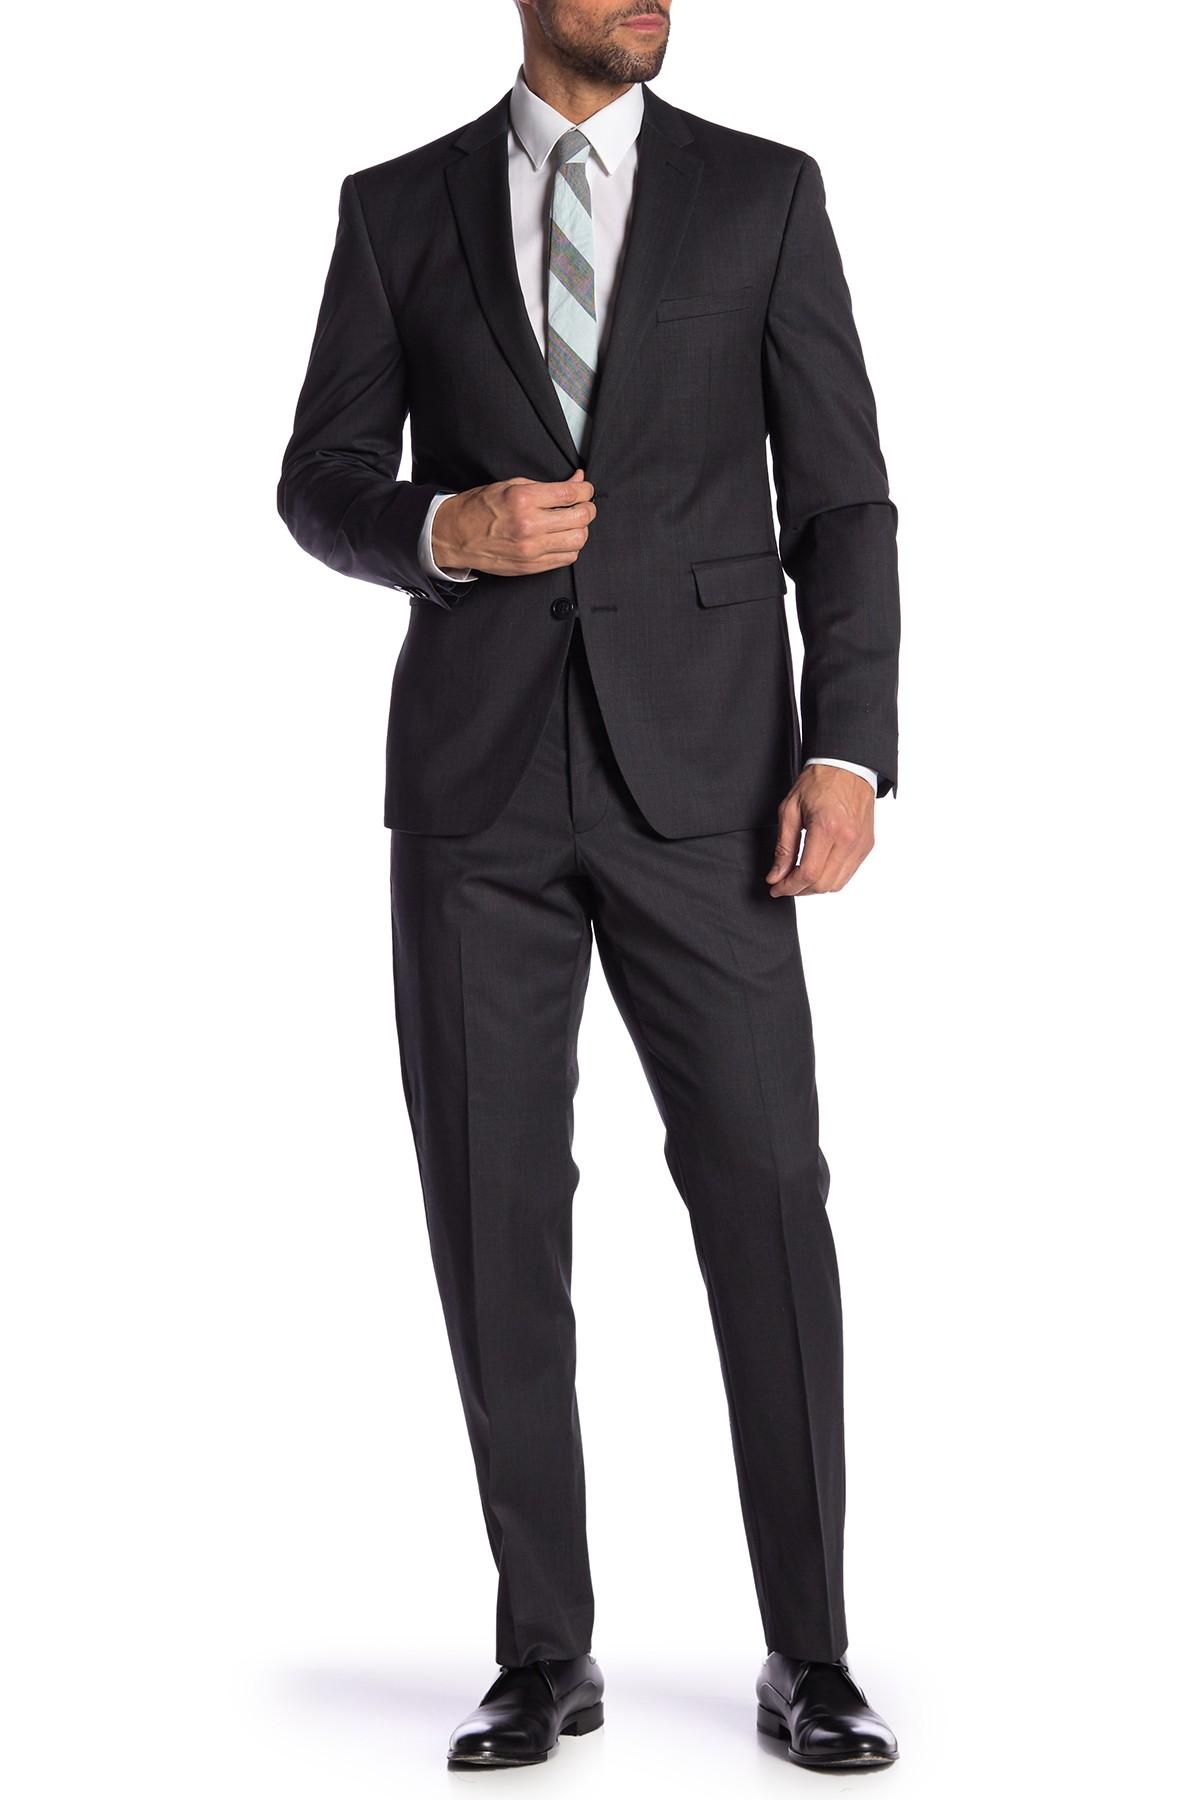 Vince Camuto Black Plaid Wool Slim Fit 2-piece Suit for Men - Lyst